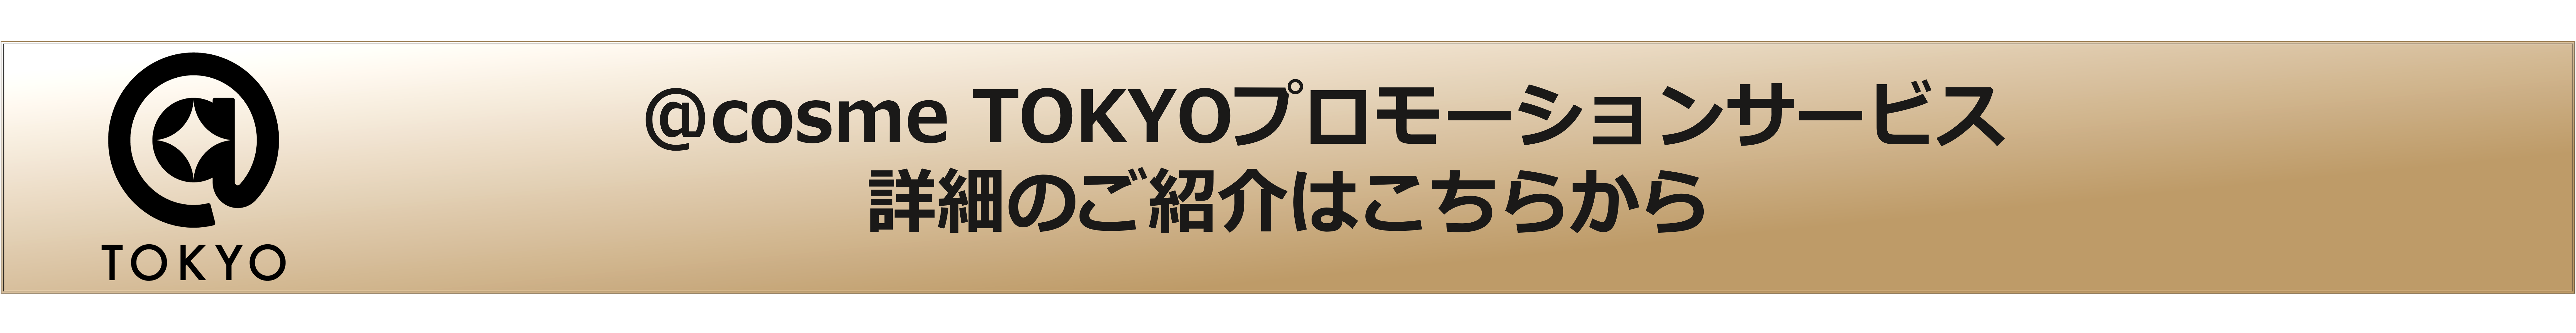 TOKYO_サービスバナー1